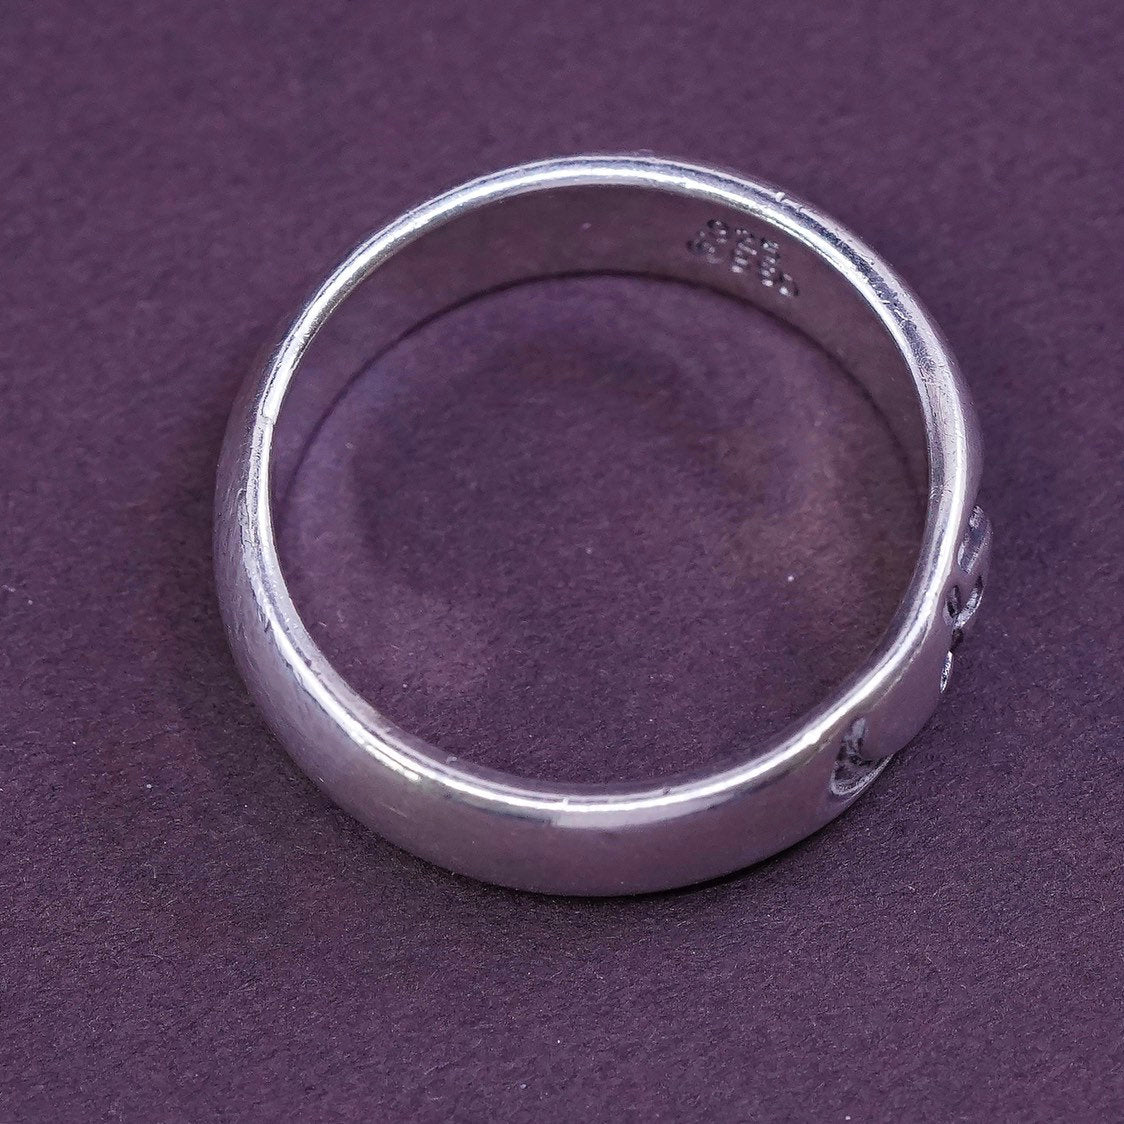 sz 8.25, vtg BSD Sterling silver prayer ring, 925 band w/ "cross" engraved